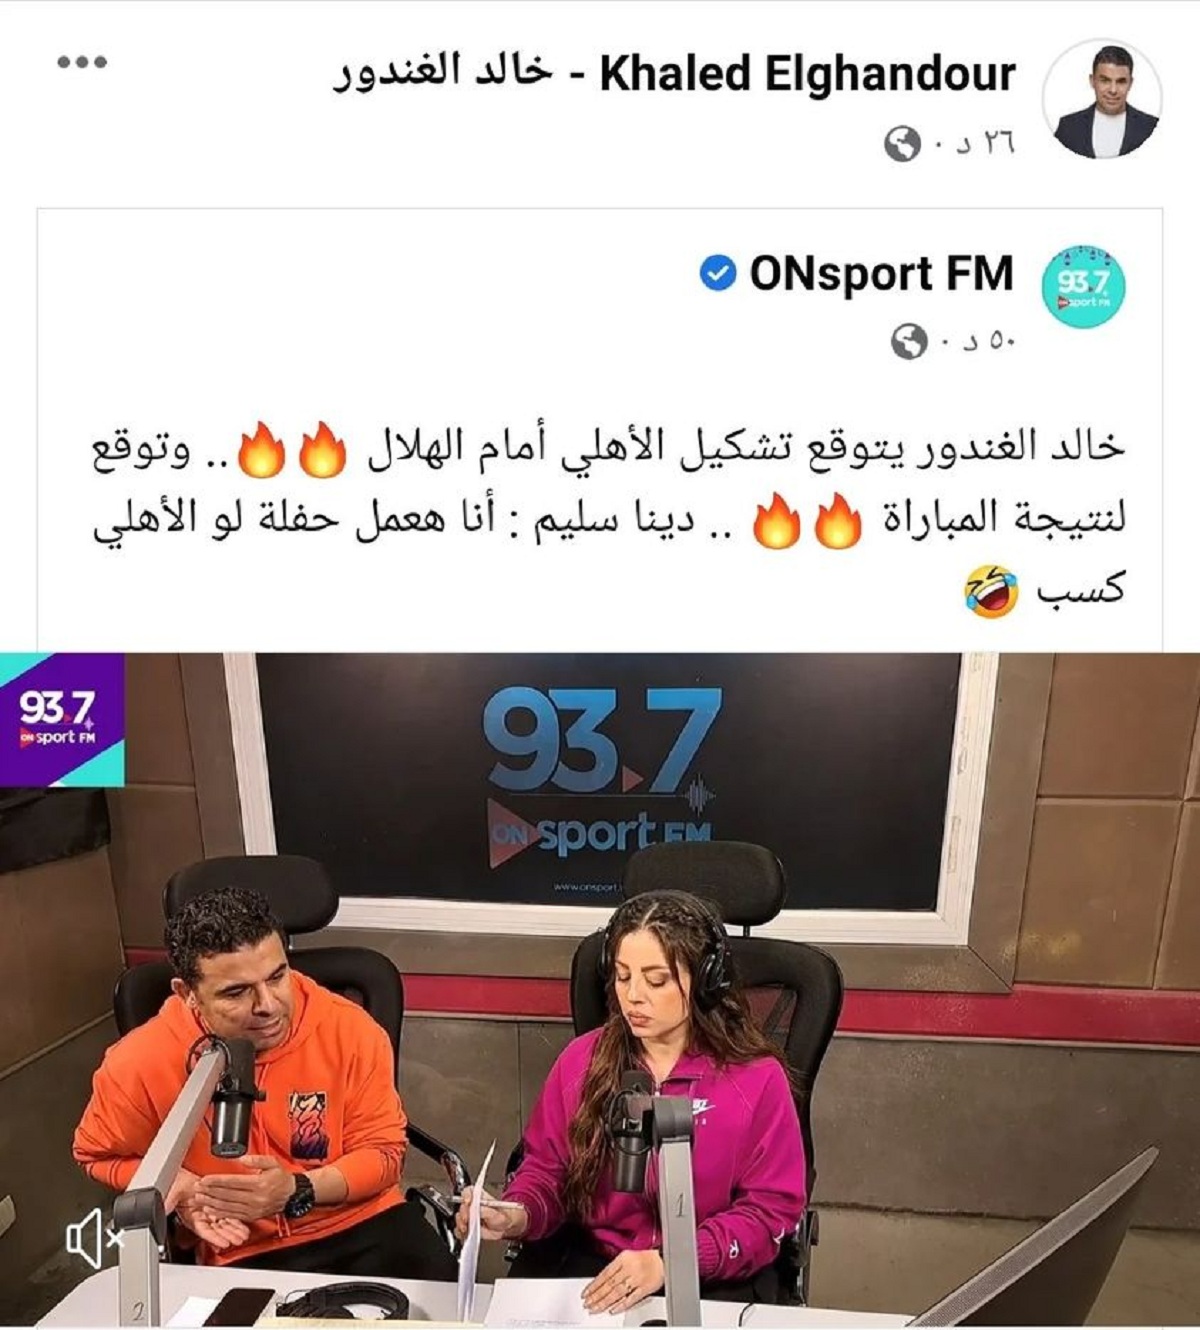 النادى الاهلى والهلال السوداني زوجه خالد الغندور تثير الجدل